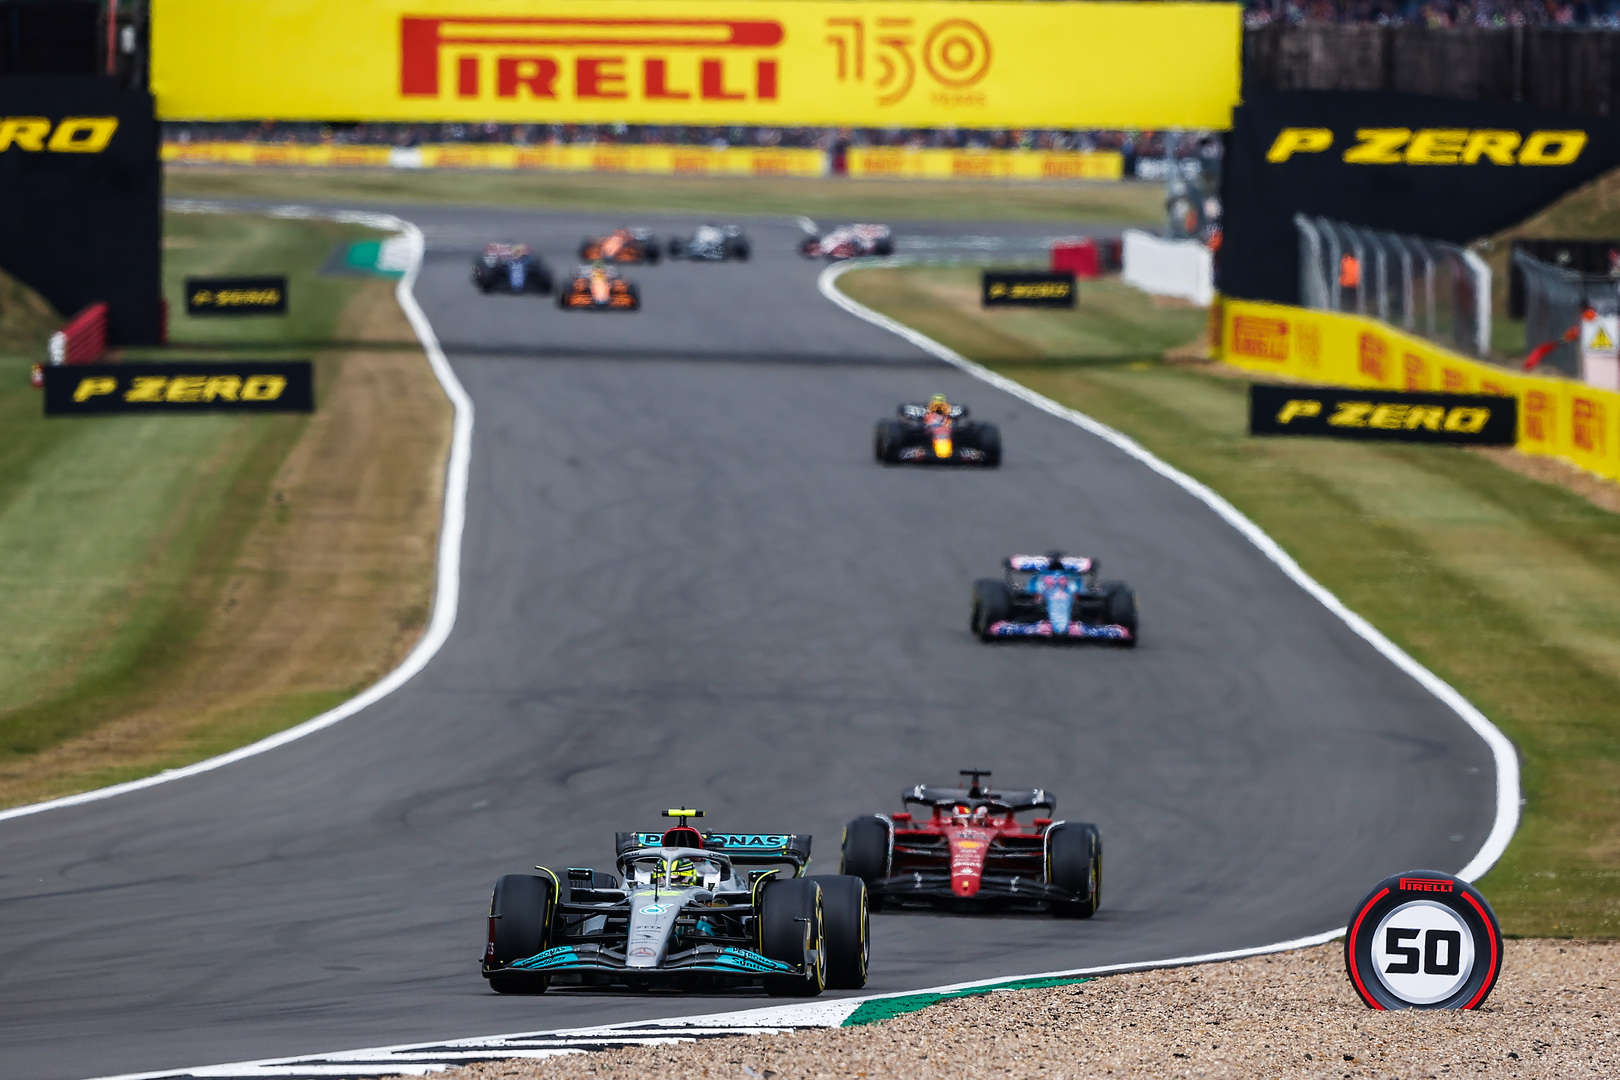 Gp di Silverstone di F1 2022, tutti i giri veloci: Hamilton e Mercedes si confermano veloci.